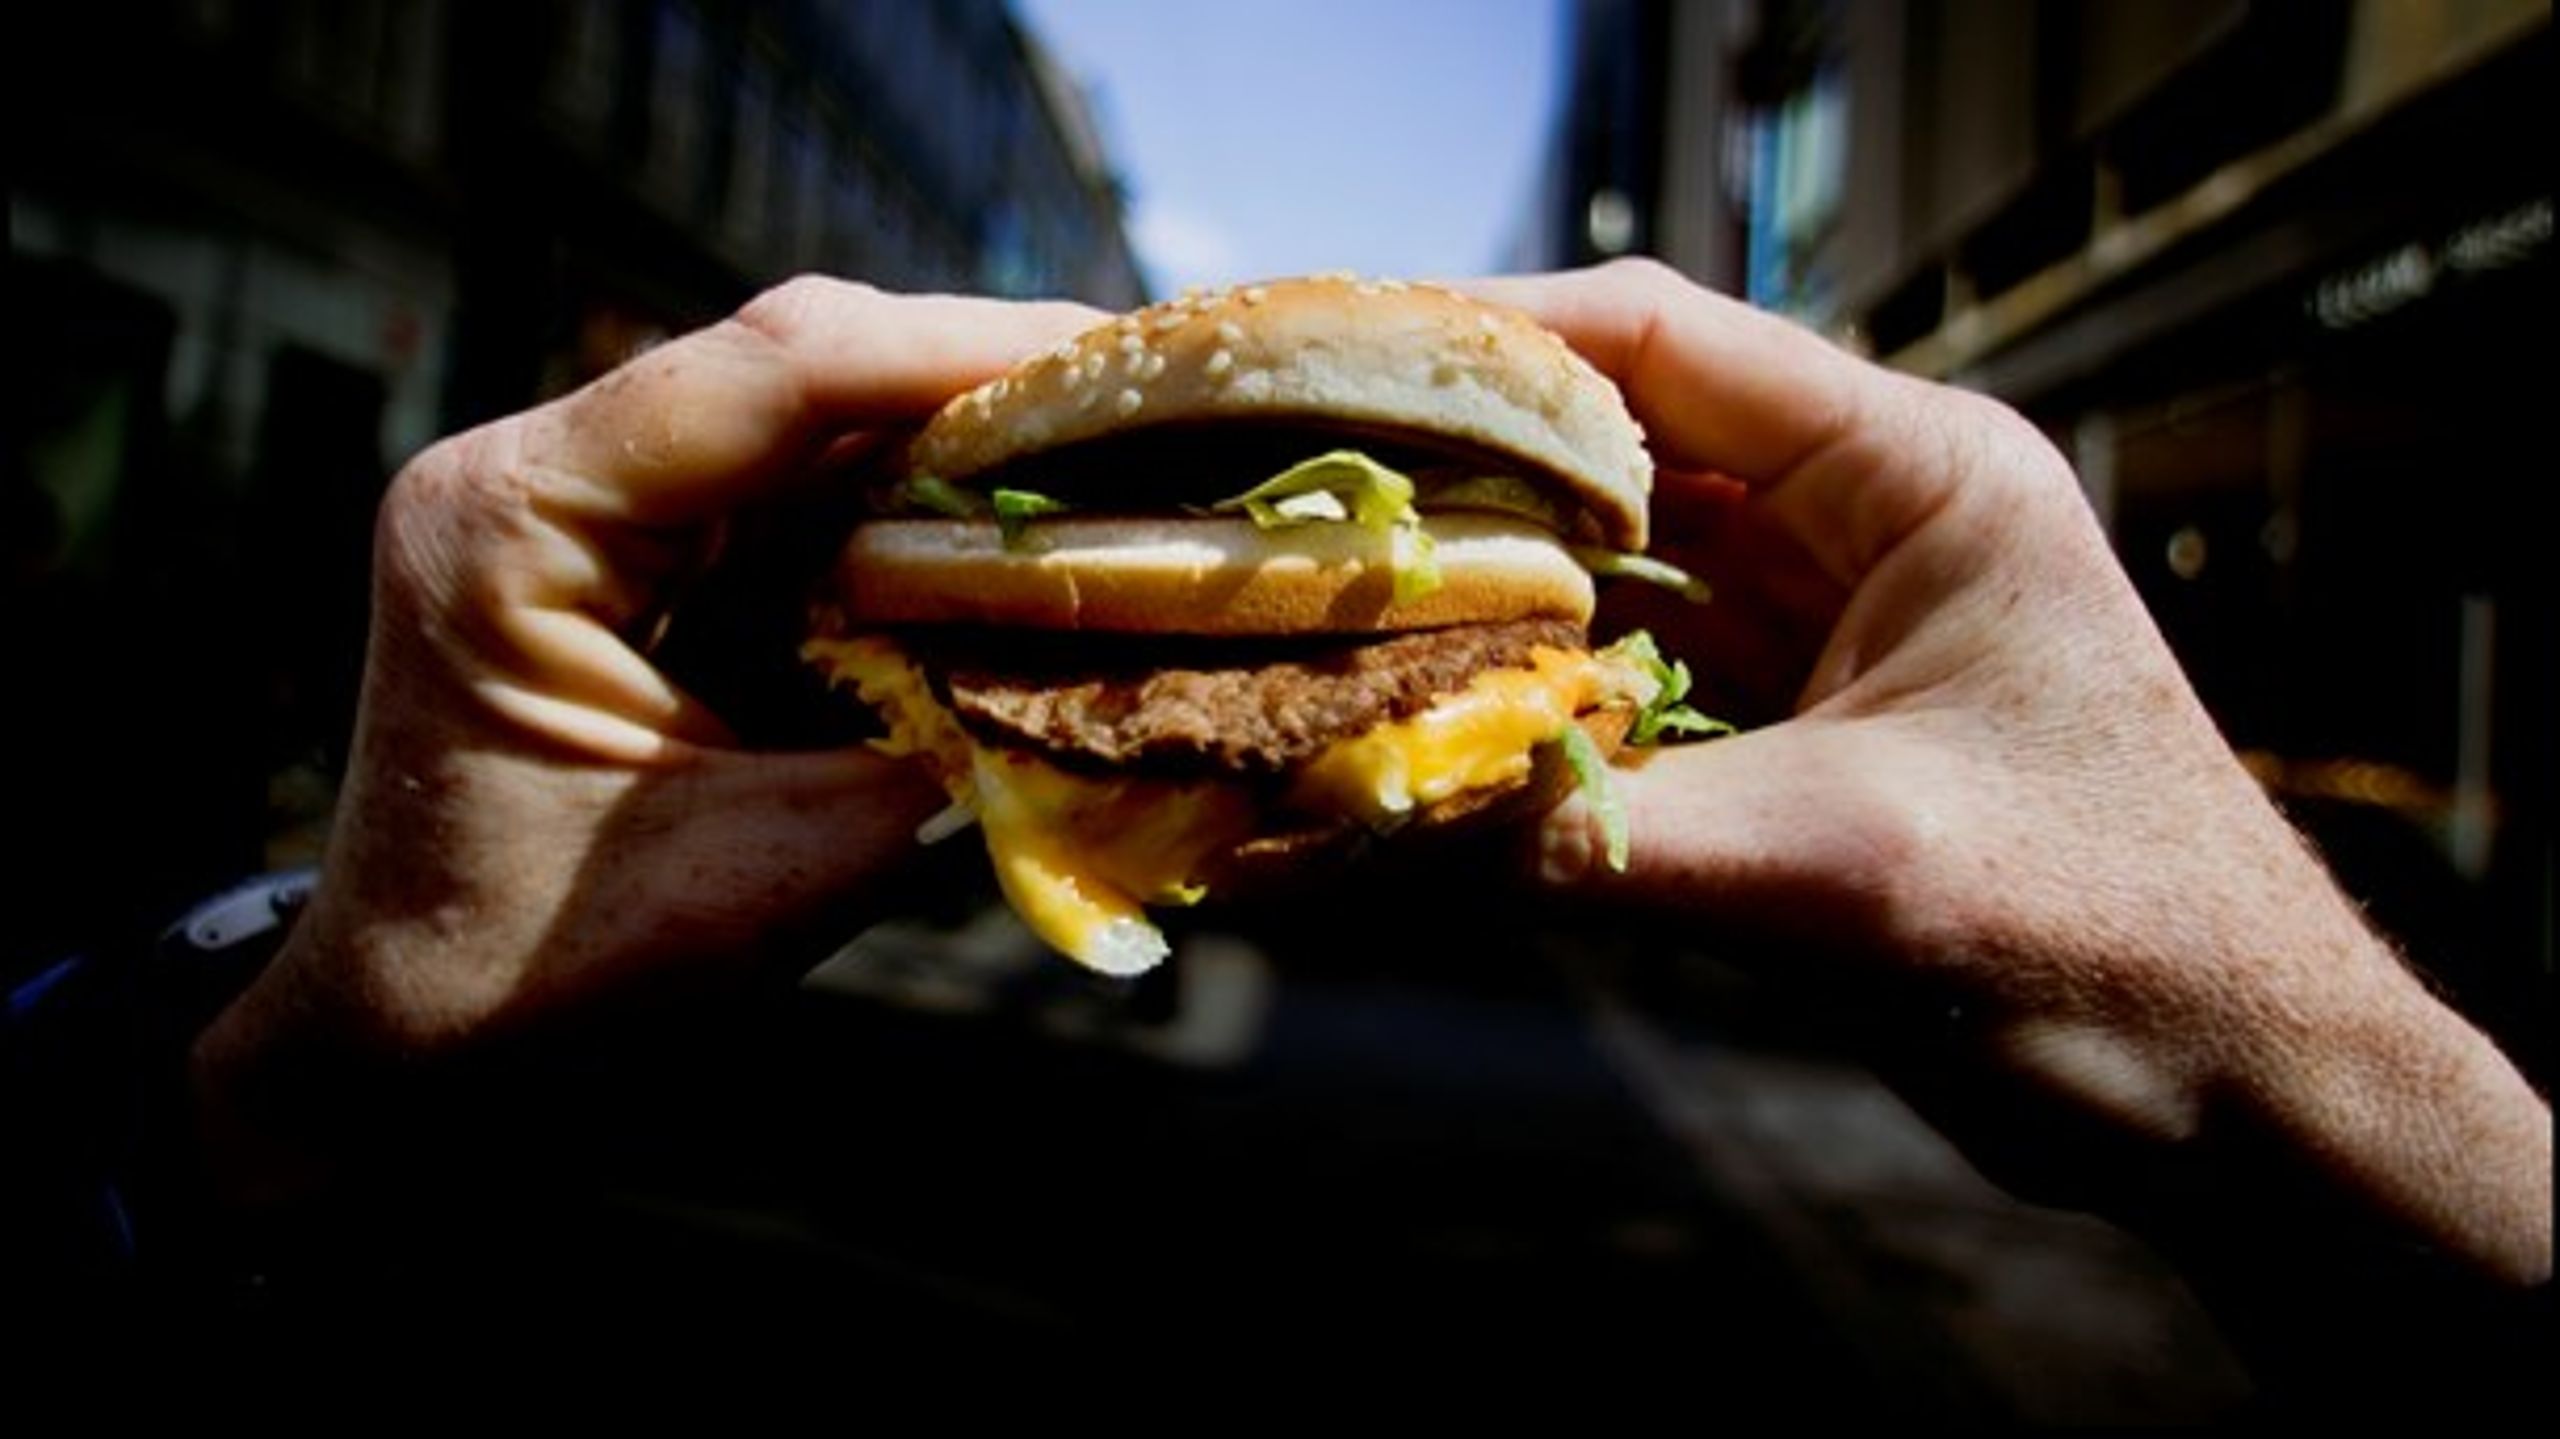 Kan man godt være en moralsk orienteret&nbsp;forbruger og samtidig spise på McDonalds, funderer Carl Valentin.